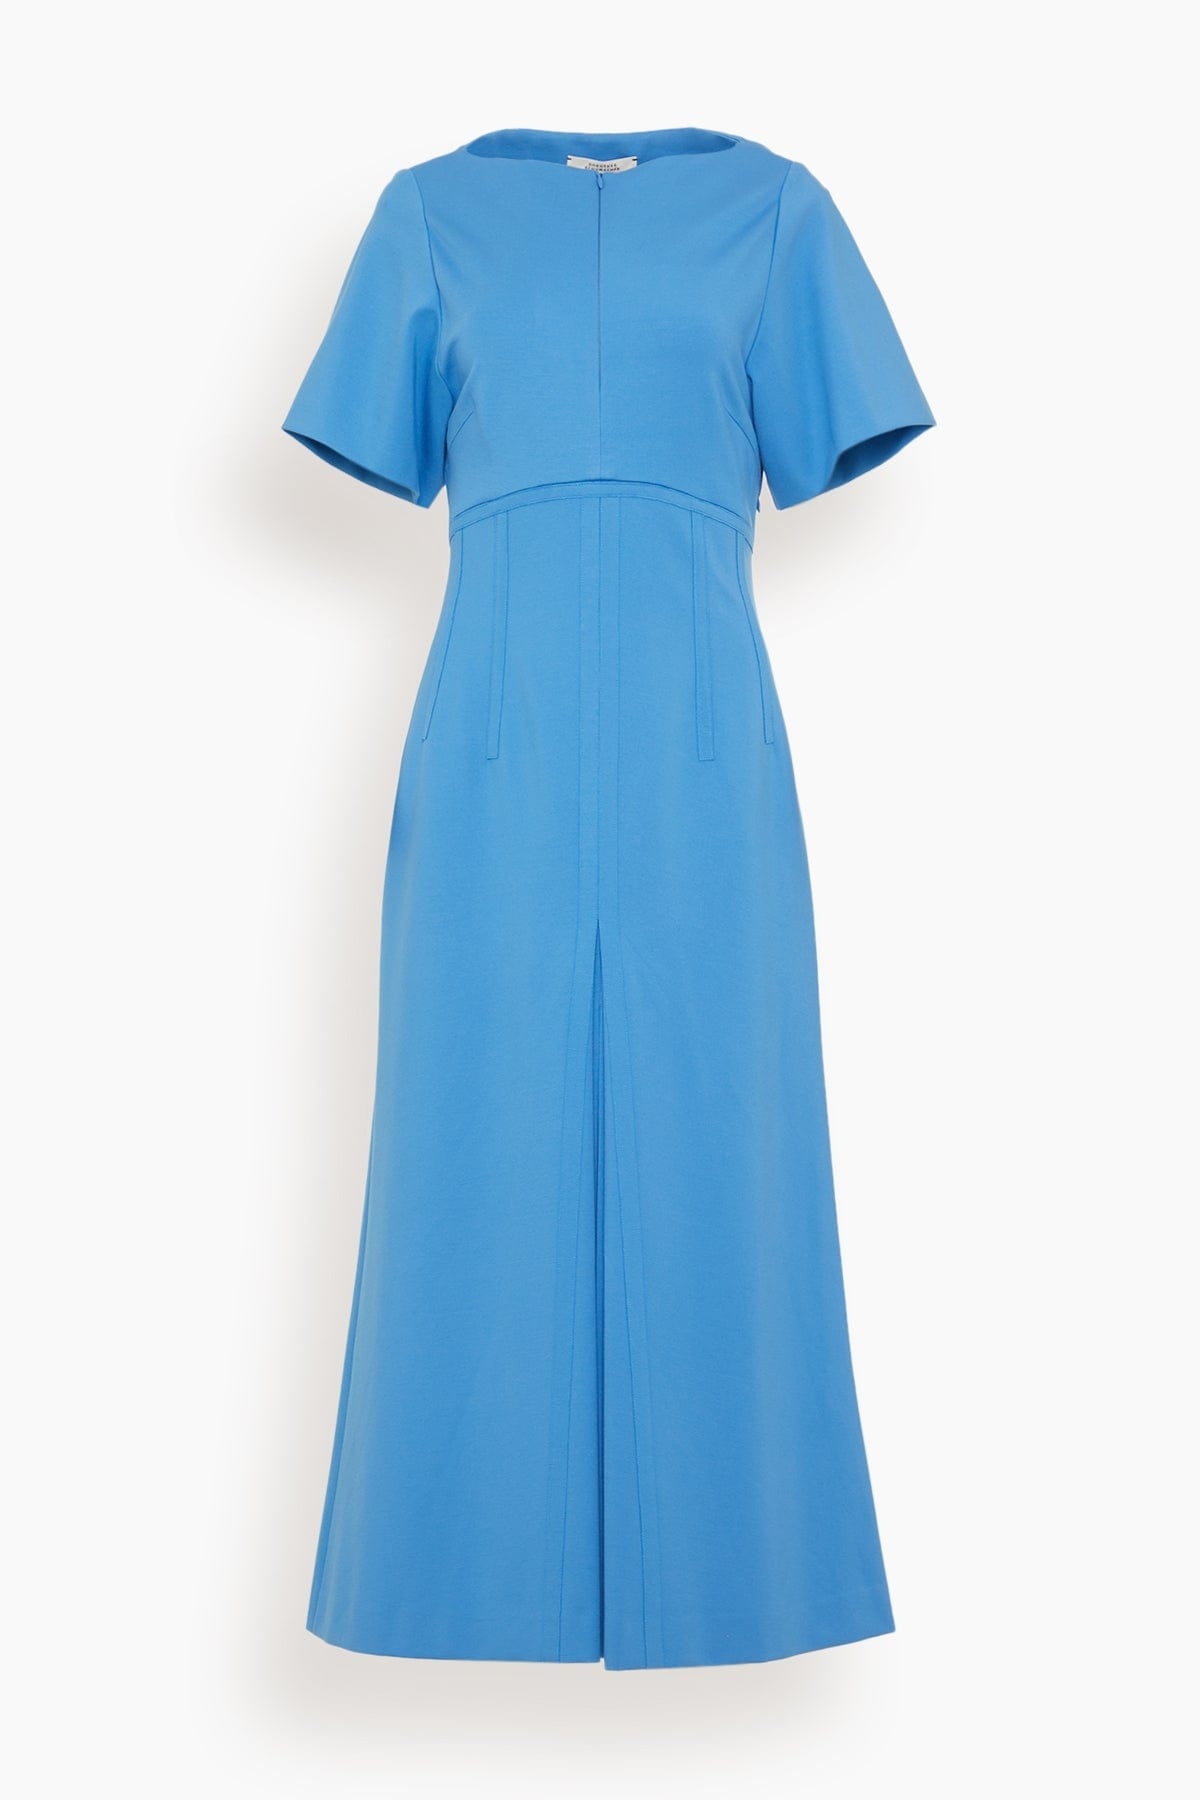 Emotional Essence Dress in Cornflower Blue - 1